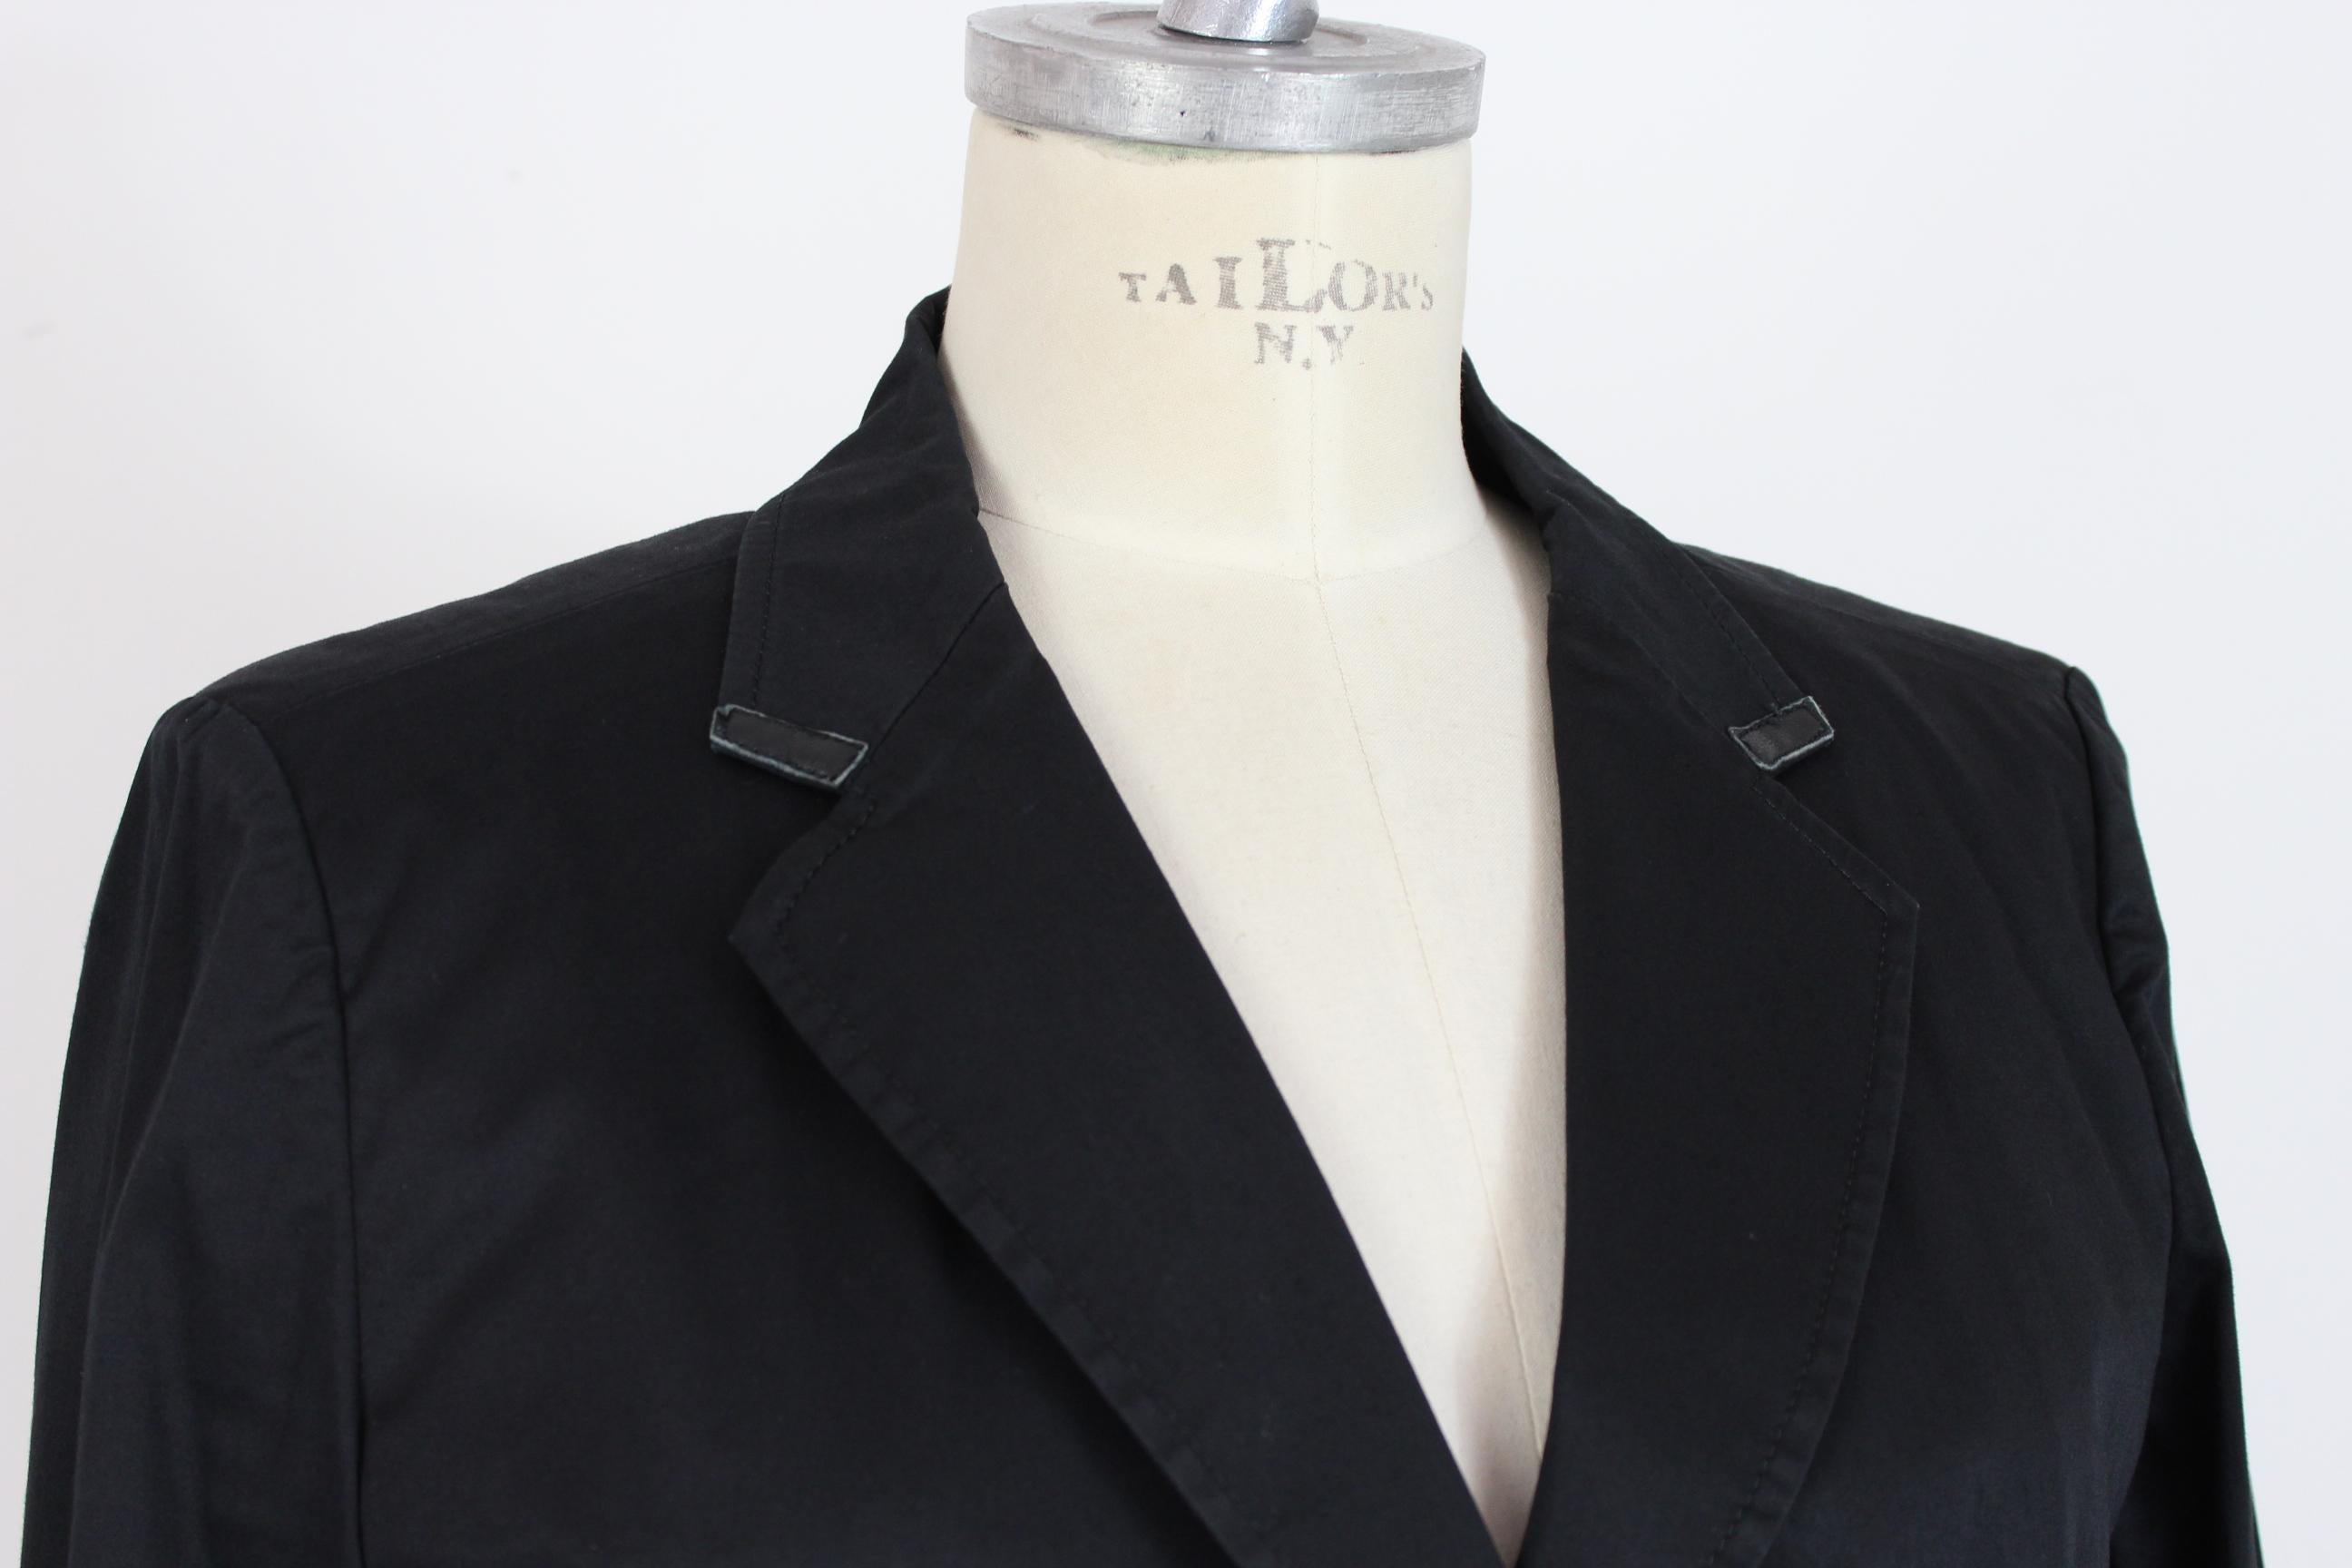 a collezioni italia leather jacket